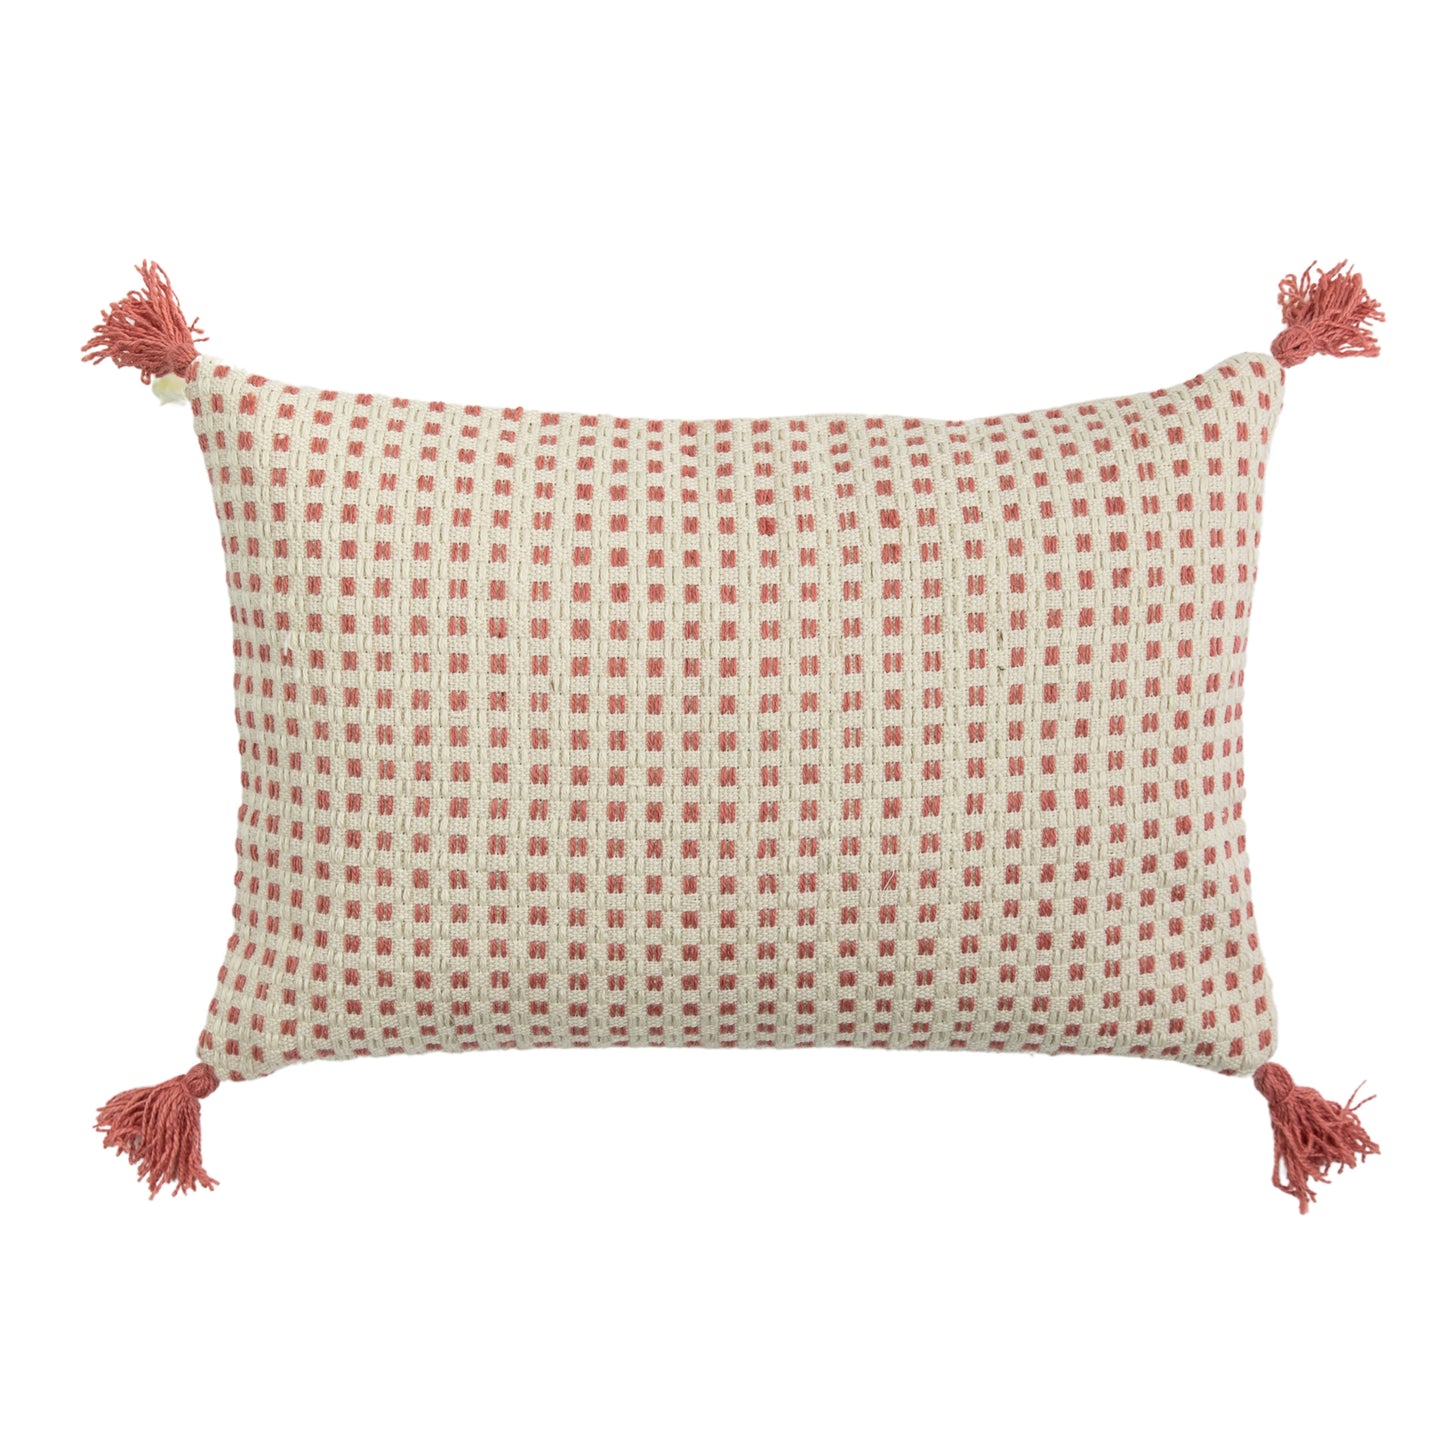 A tassel cushion for home furniture.